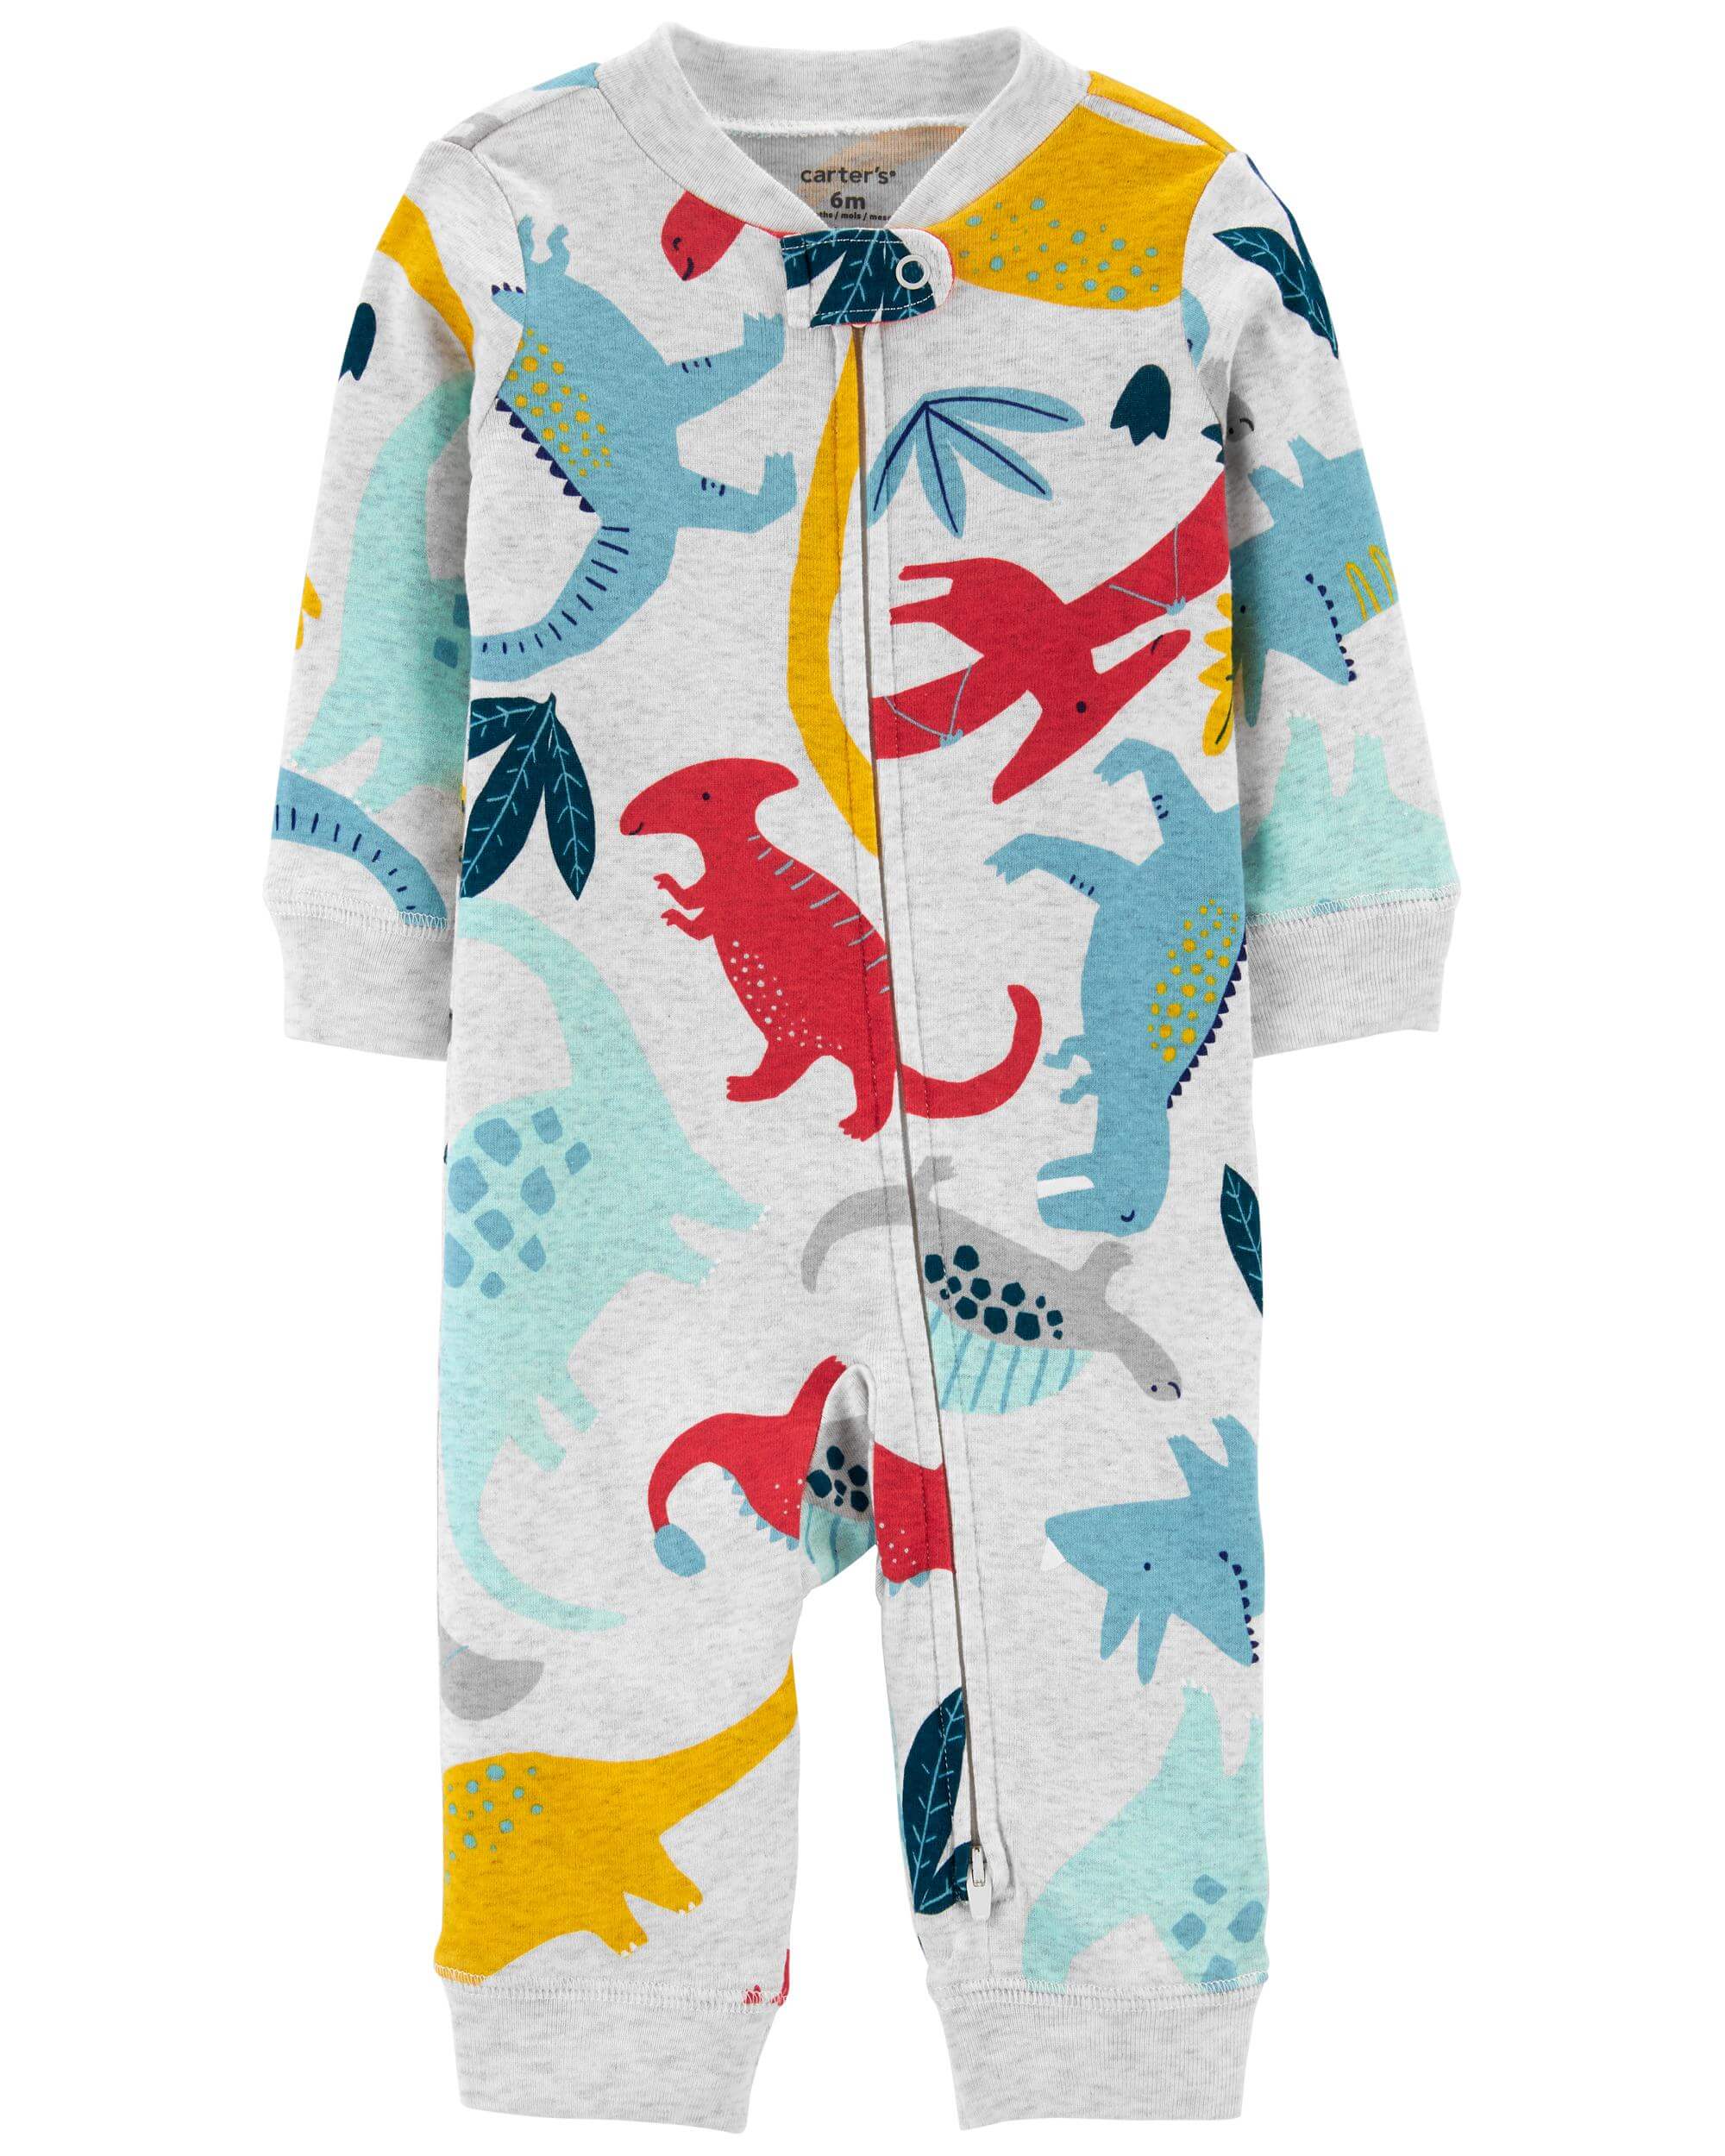 Carter’s Pijama Dinozauri Carter's